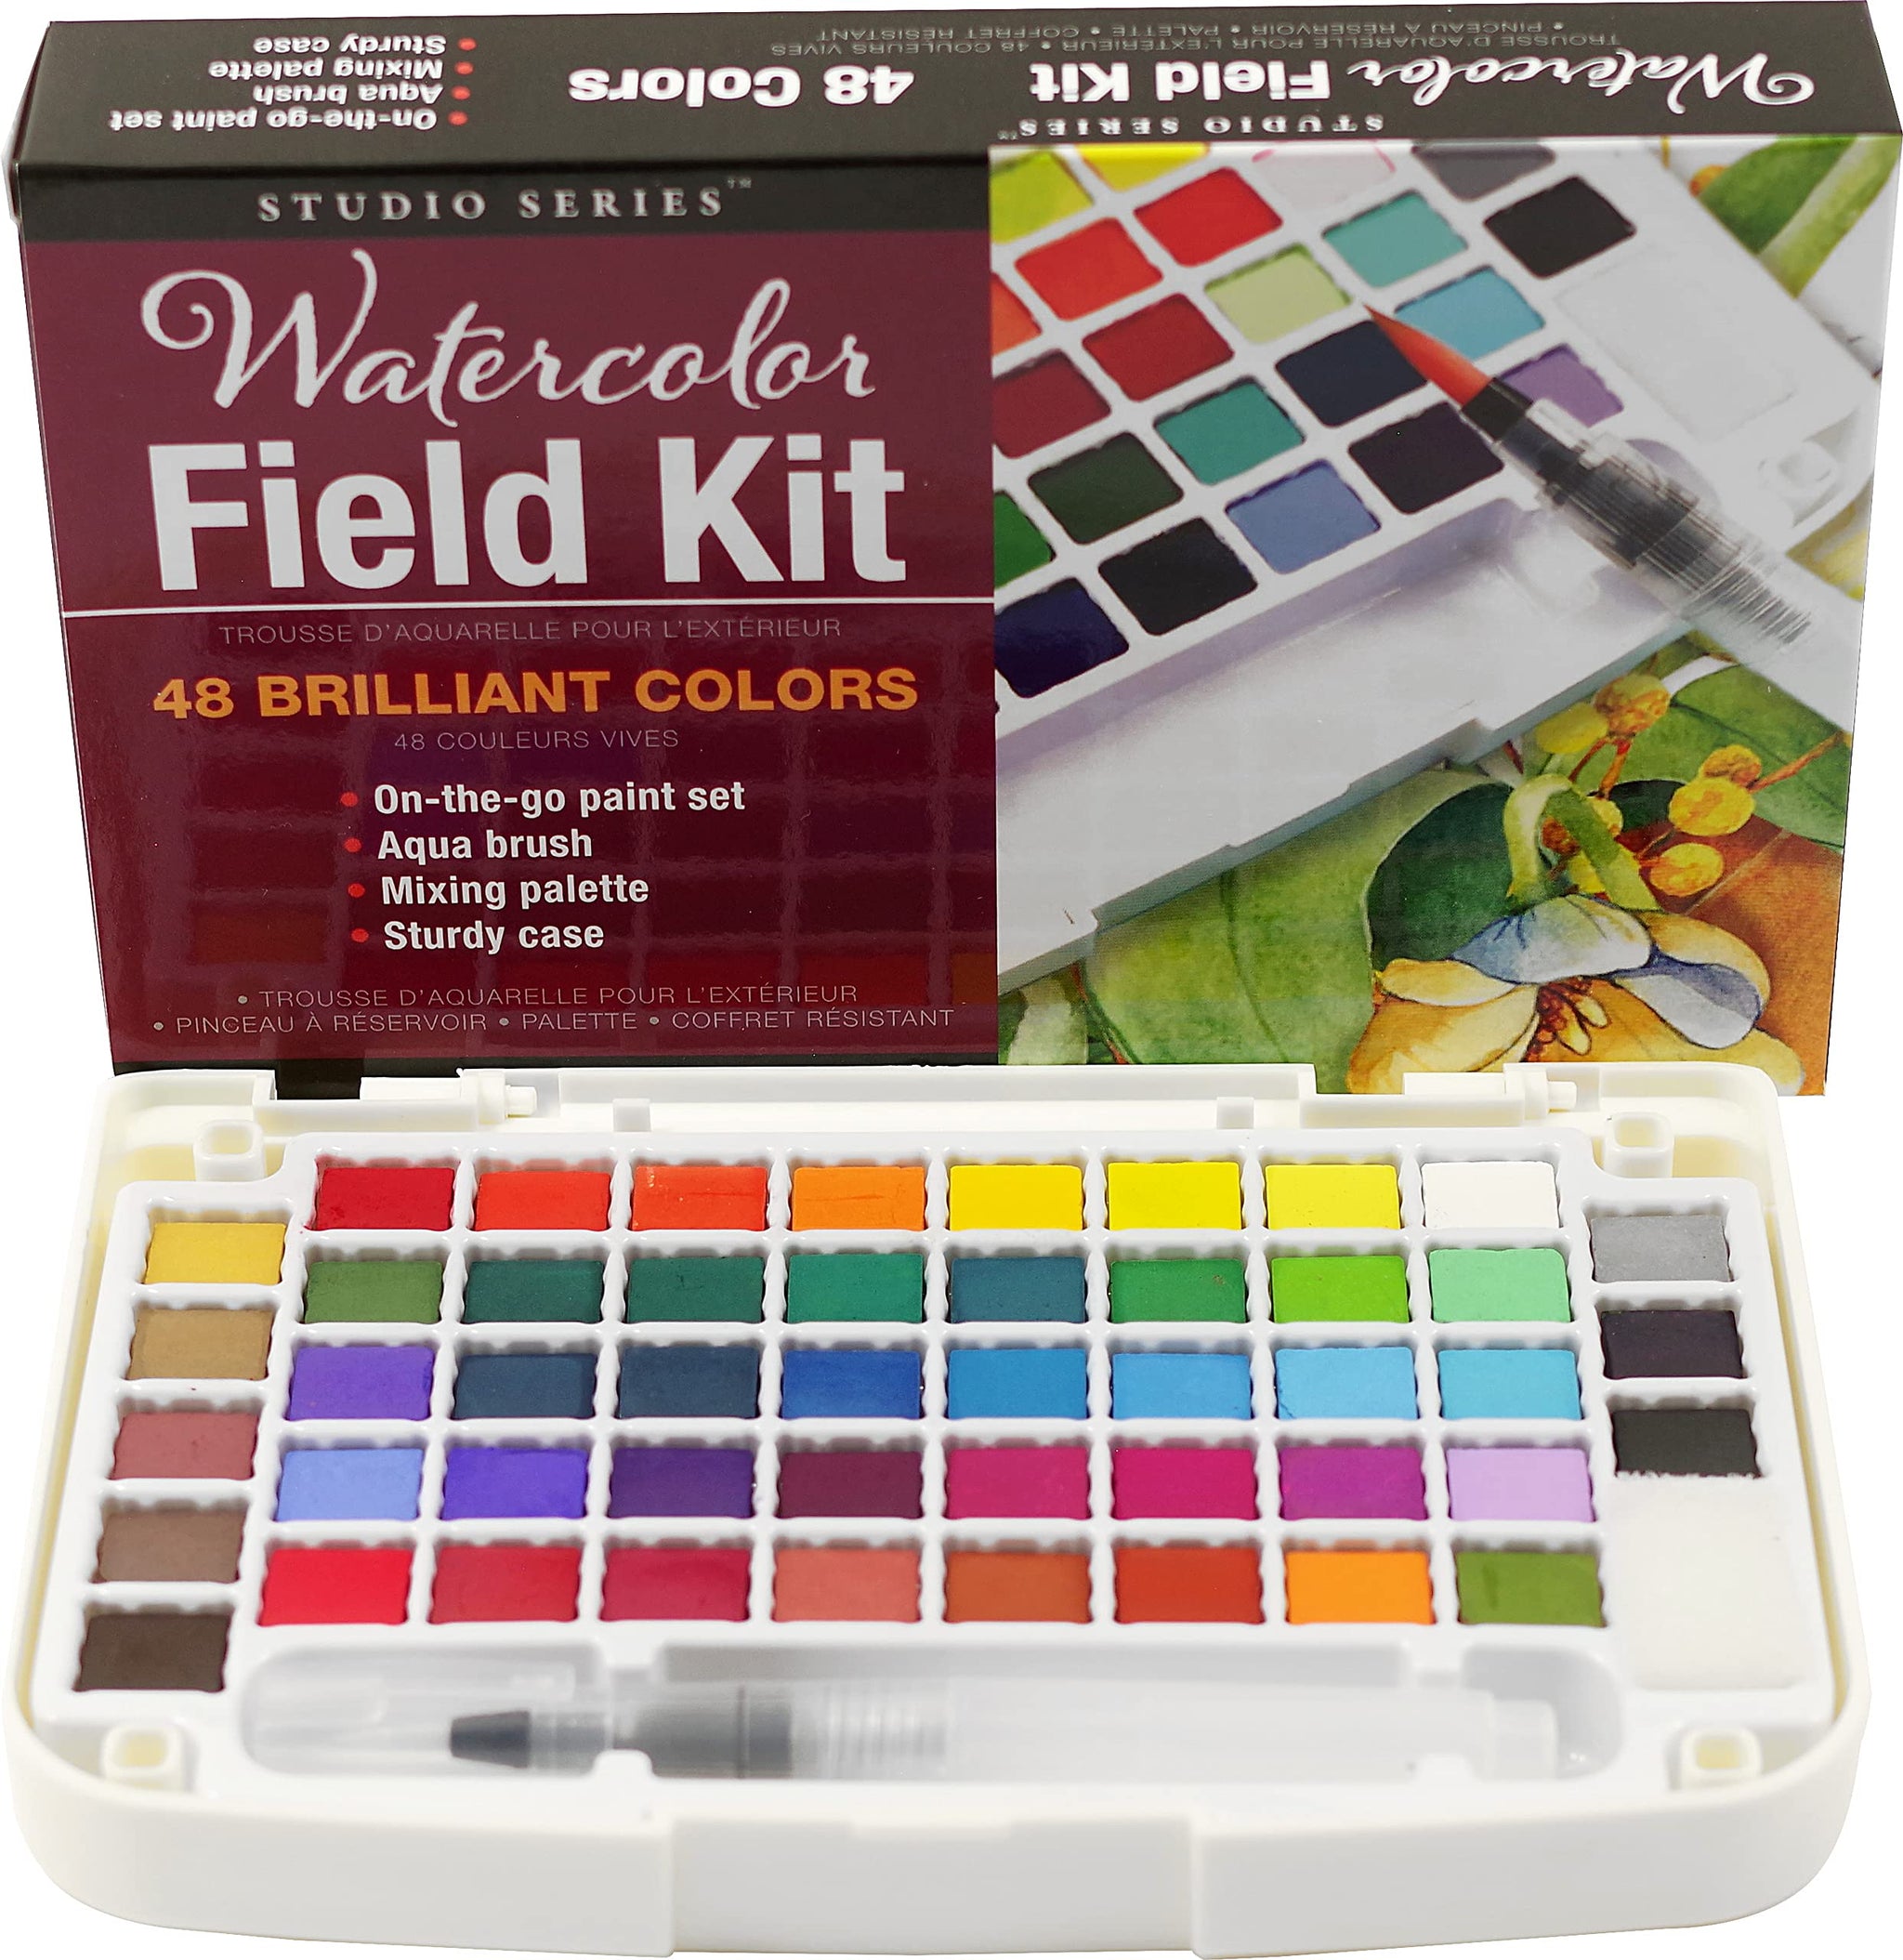 Watercolor Field Kit - West Side Kids Inc